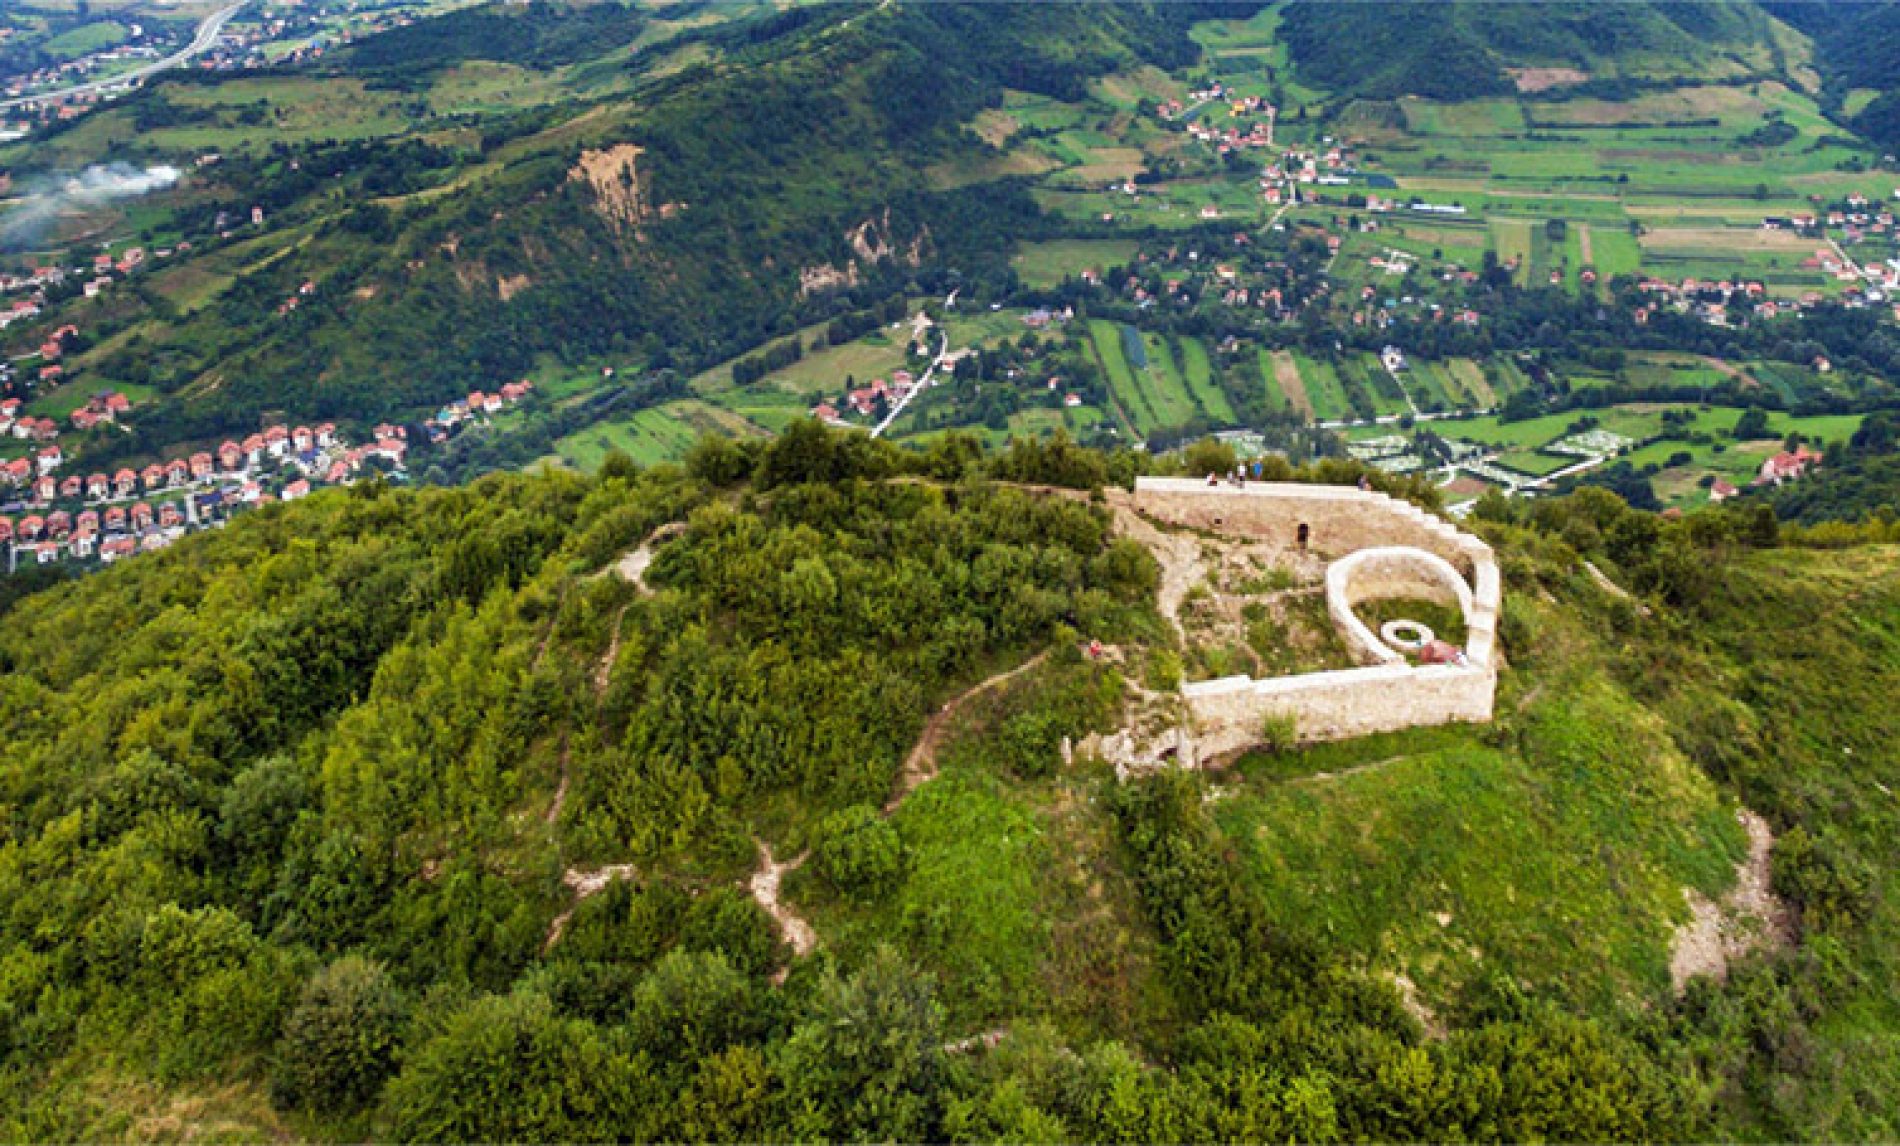 Uskoro postavljanje jarbola i zastave na srednjovjekovnom bosanskom gradu – Visoki